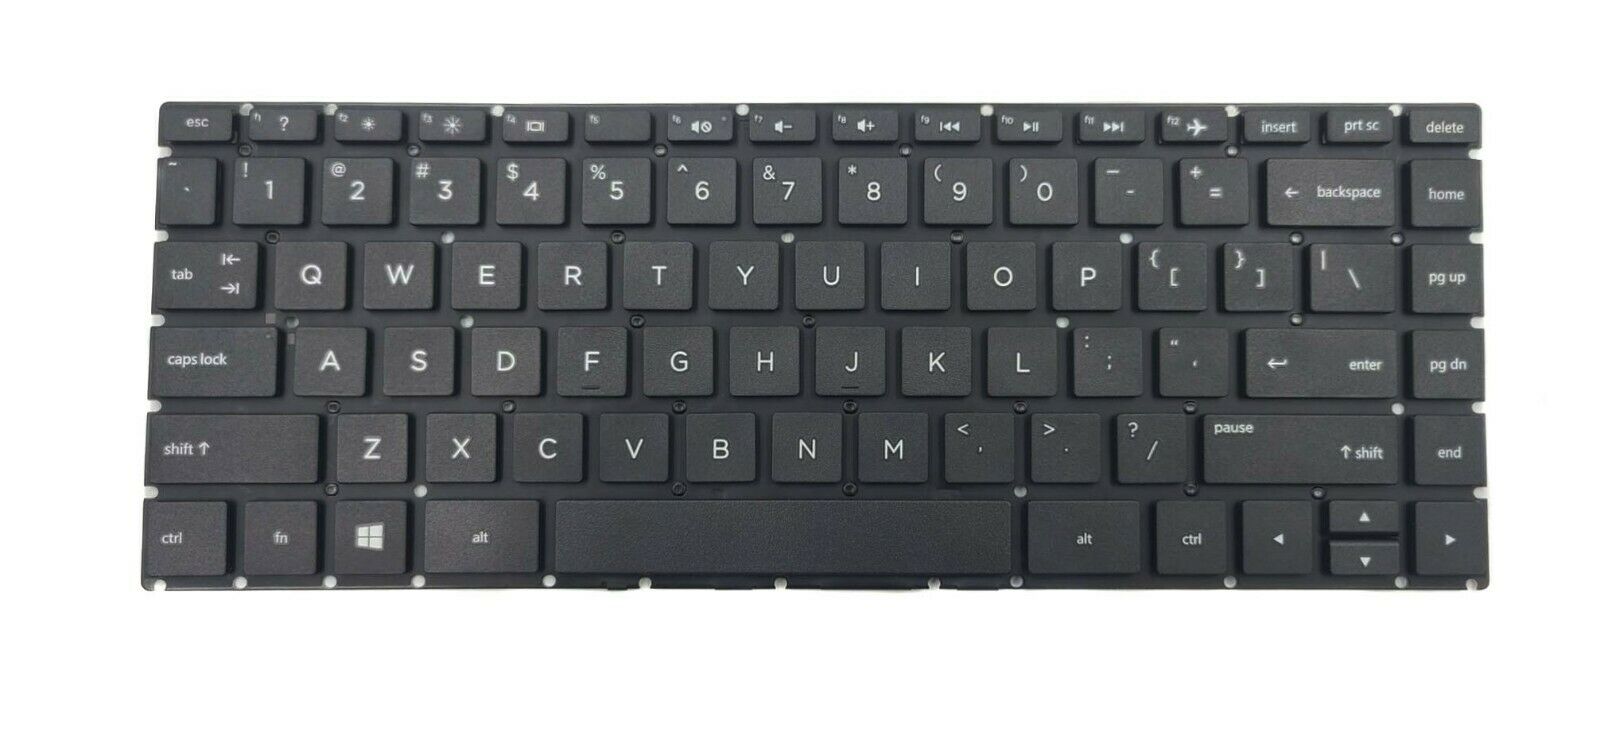 Bàn phím dành cho Laptop HP 340 G5, 340 G7